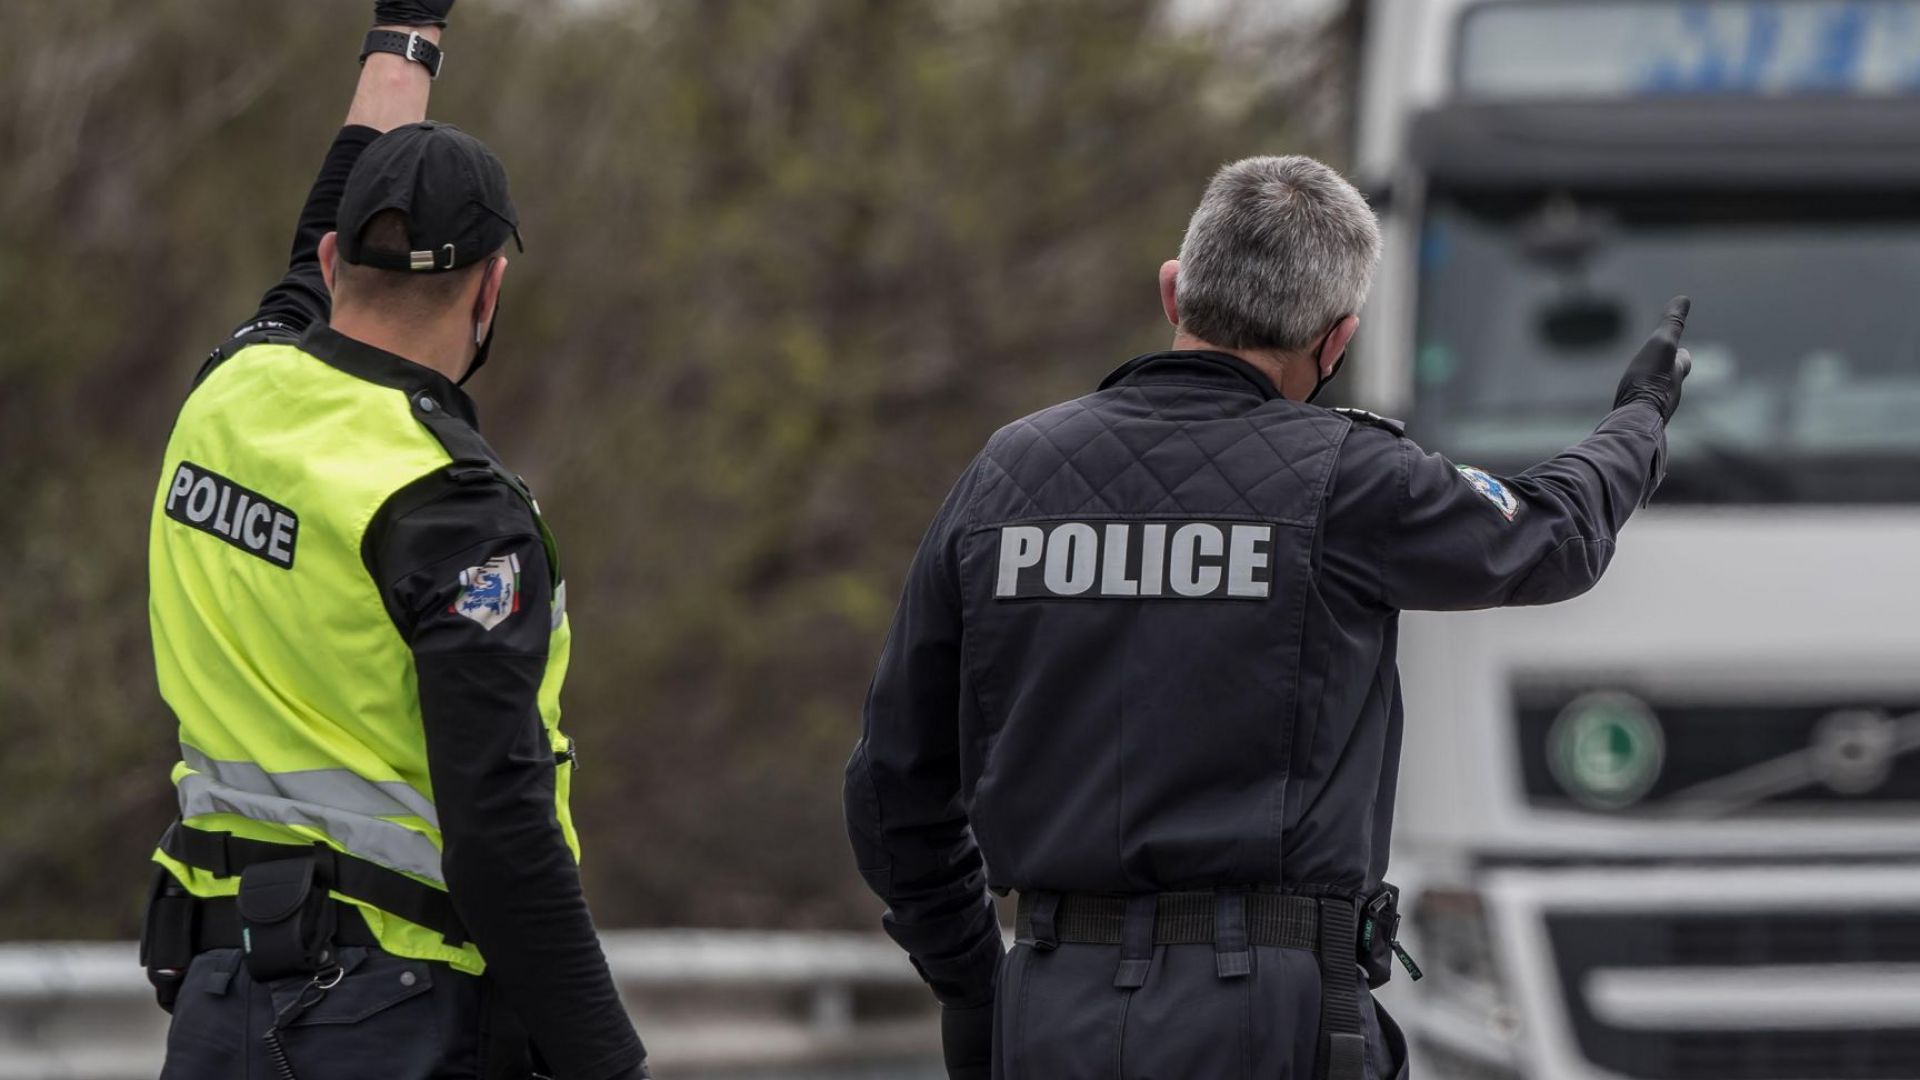 Шофьор на БМВ се заби в камион на АМ "Тракия", дрегерът отчете 3,43 промила